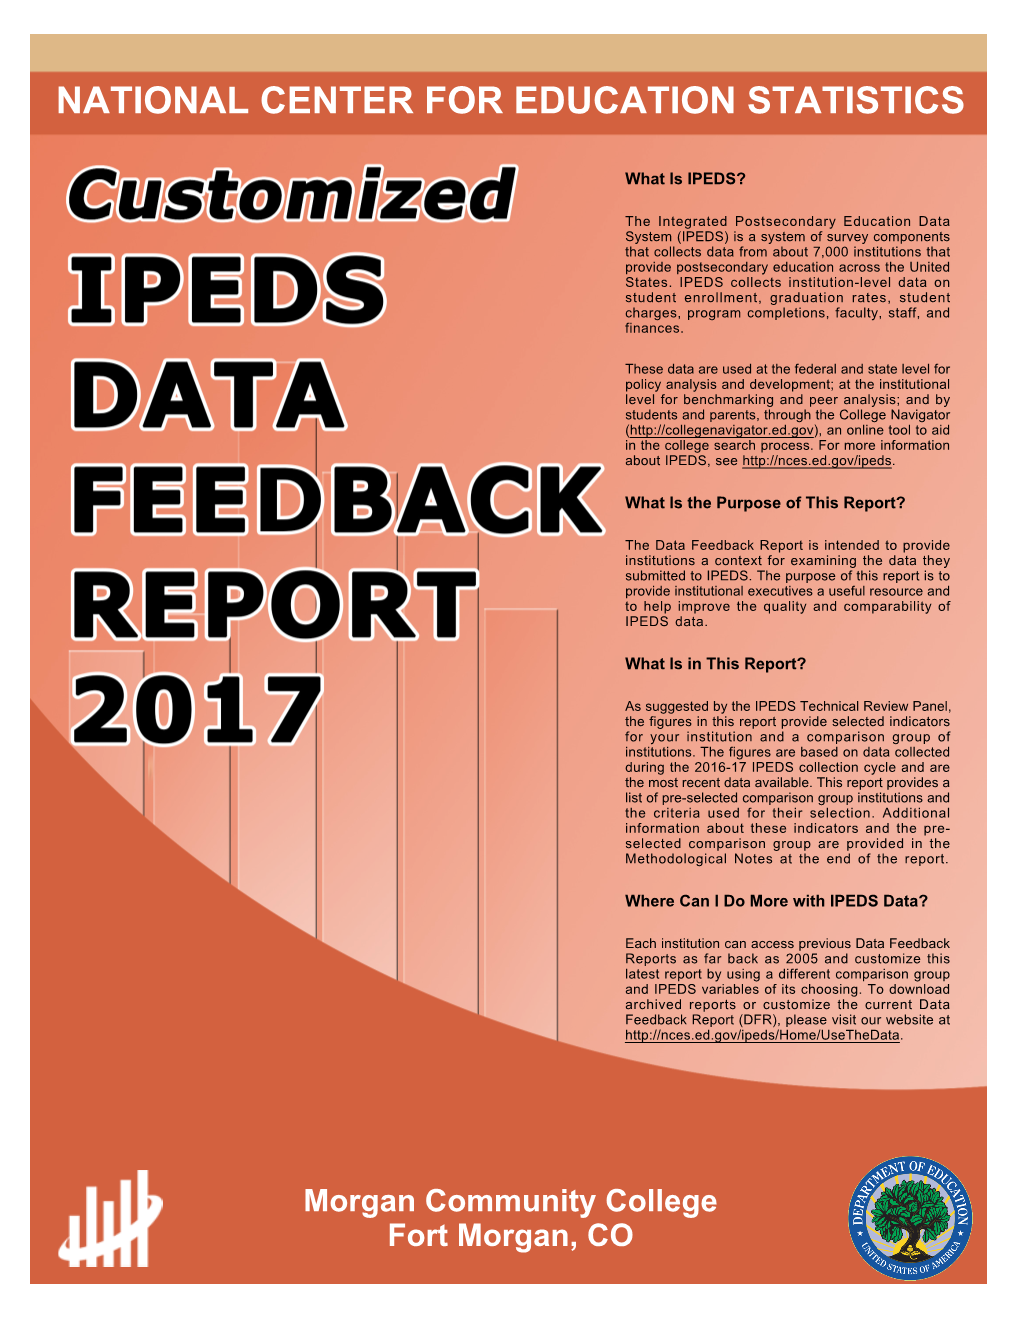 DFR 2017 Report